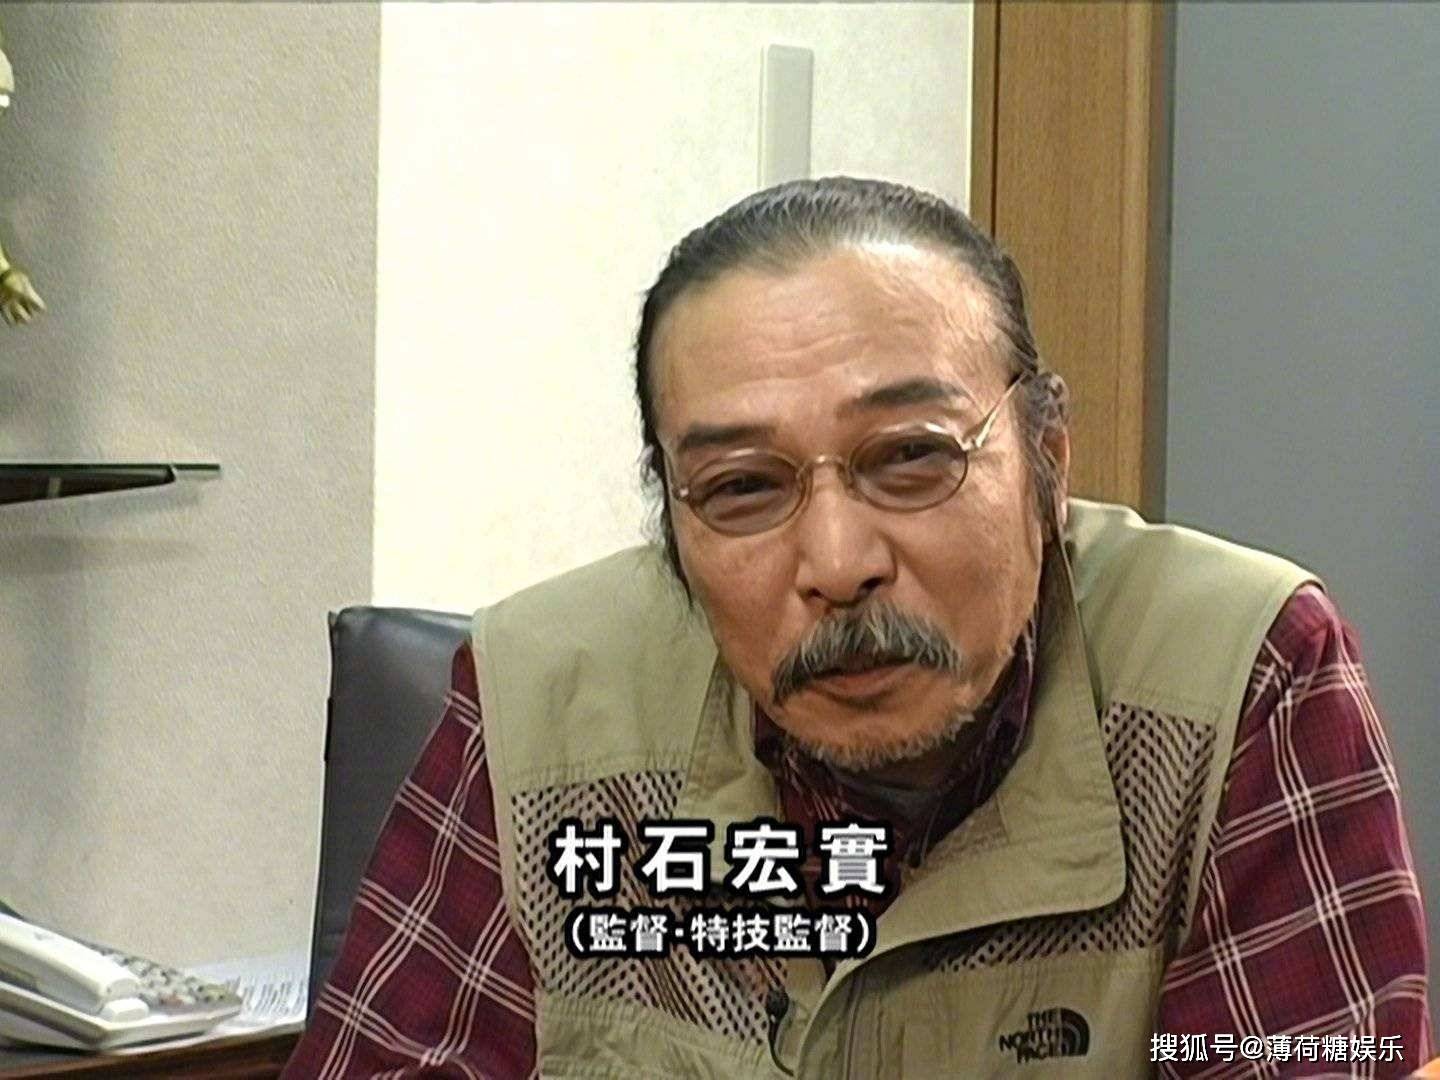 原创迪迦奥特曼导演村石宏实去世享年75岁从业55年传递光之精神